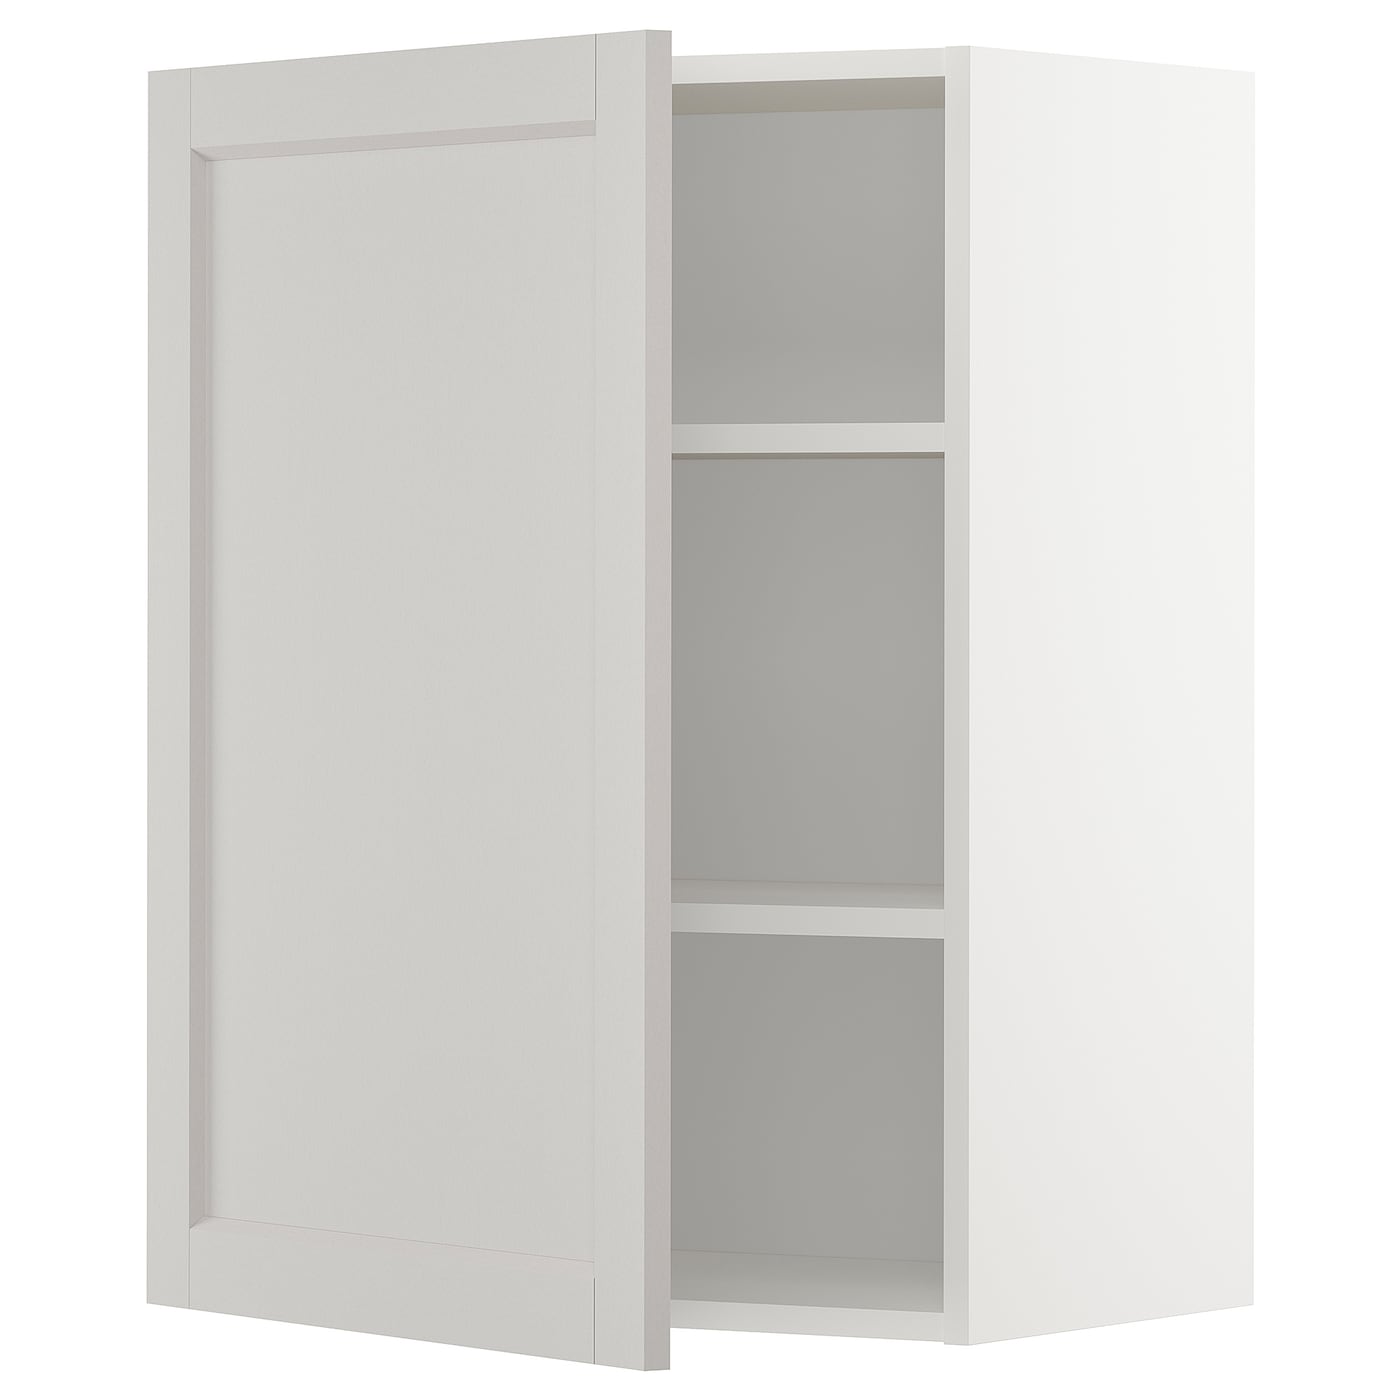 Навесной шкаф с полкой - METOD IKEA/ МЕТОД ИКЕА, 80х60 см,белый/светло-серый